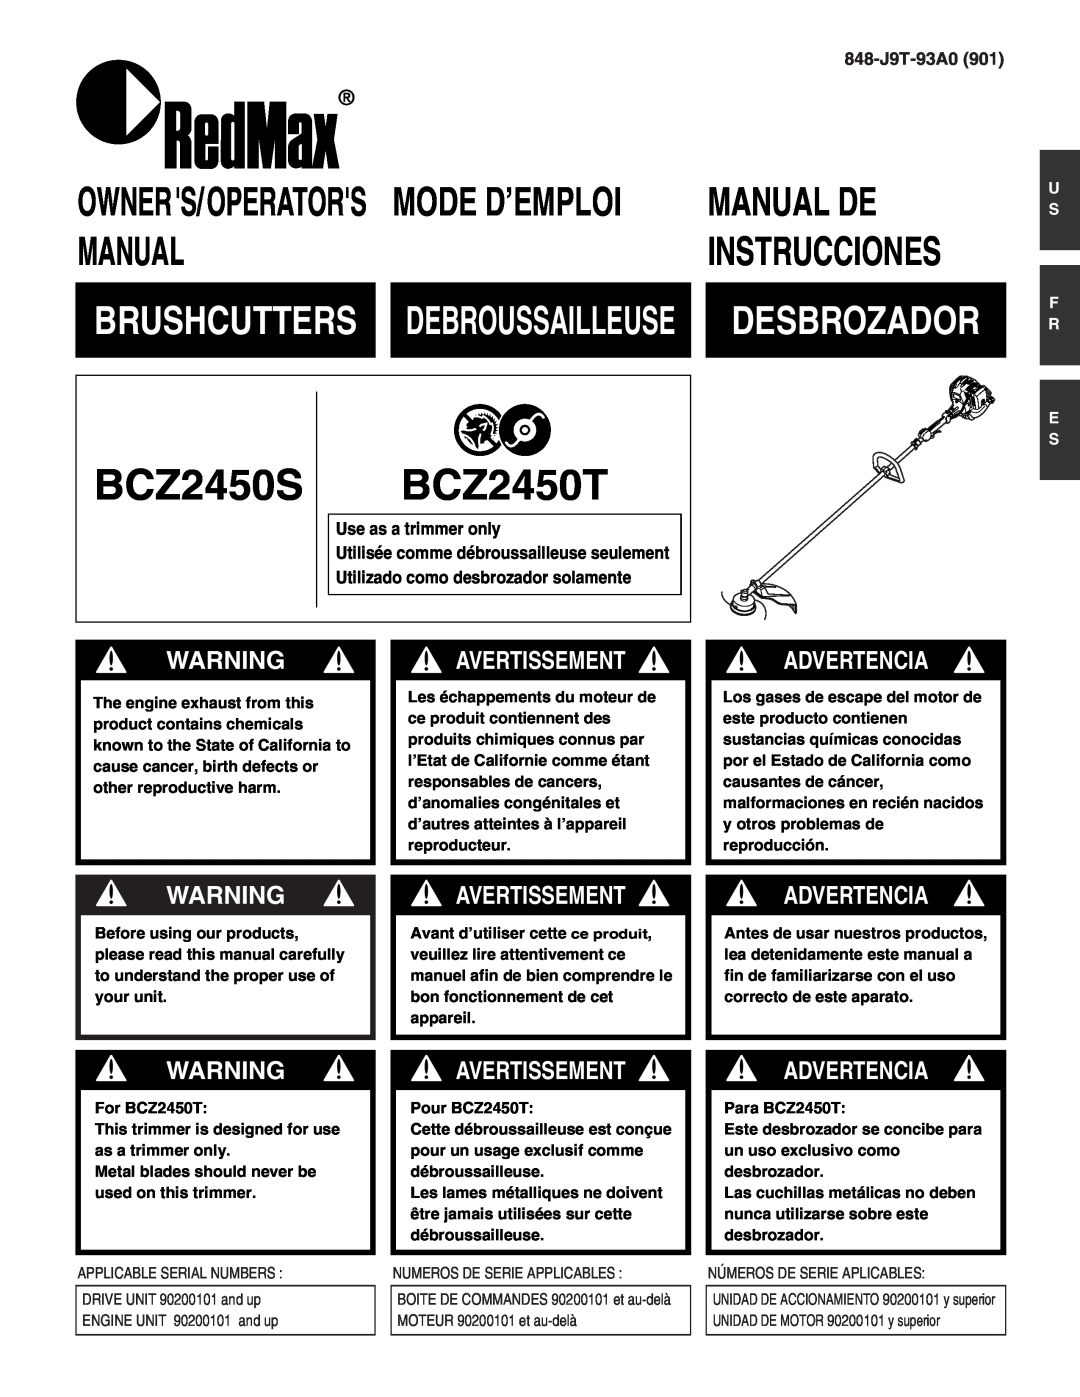 RedMax BCZ2450S manual BCZ2450T, Manual De, Desbrozador, Avertissement, Advertencia, Mode D’Emploi, Instrucciones 